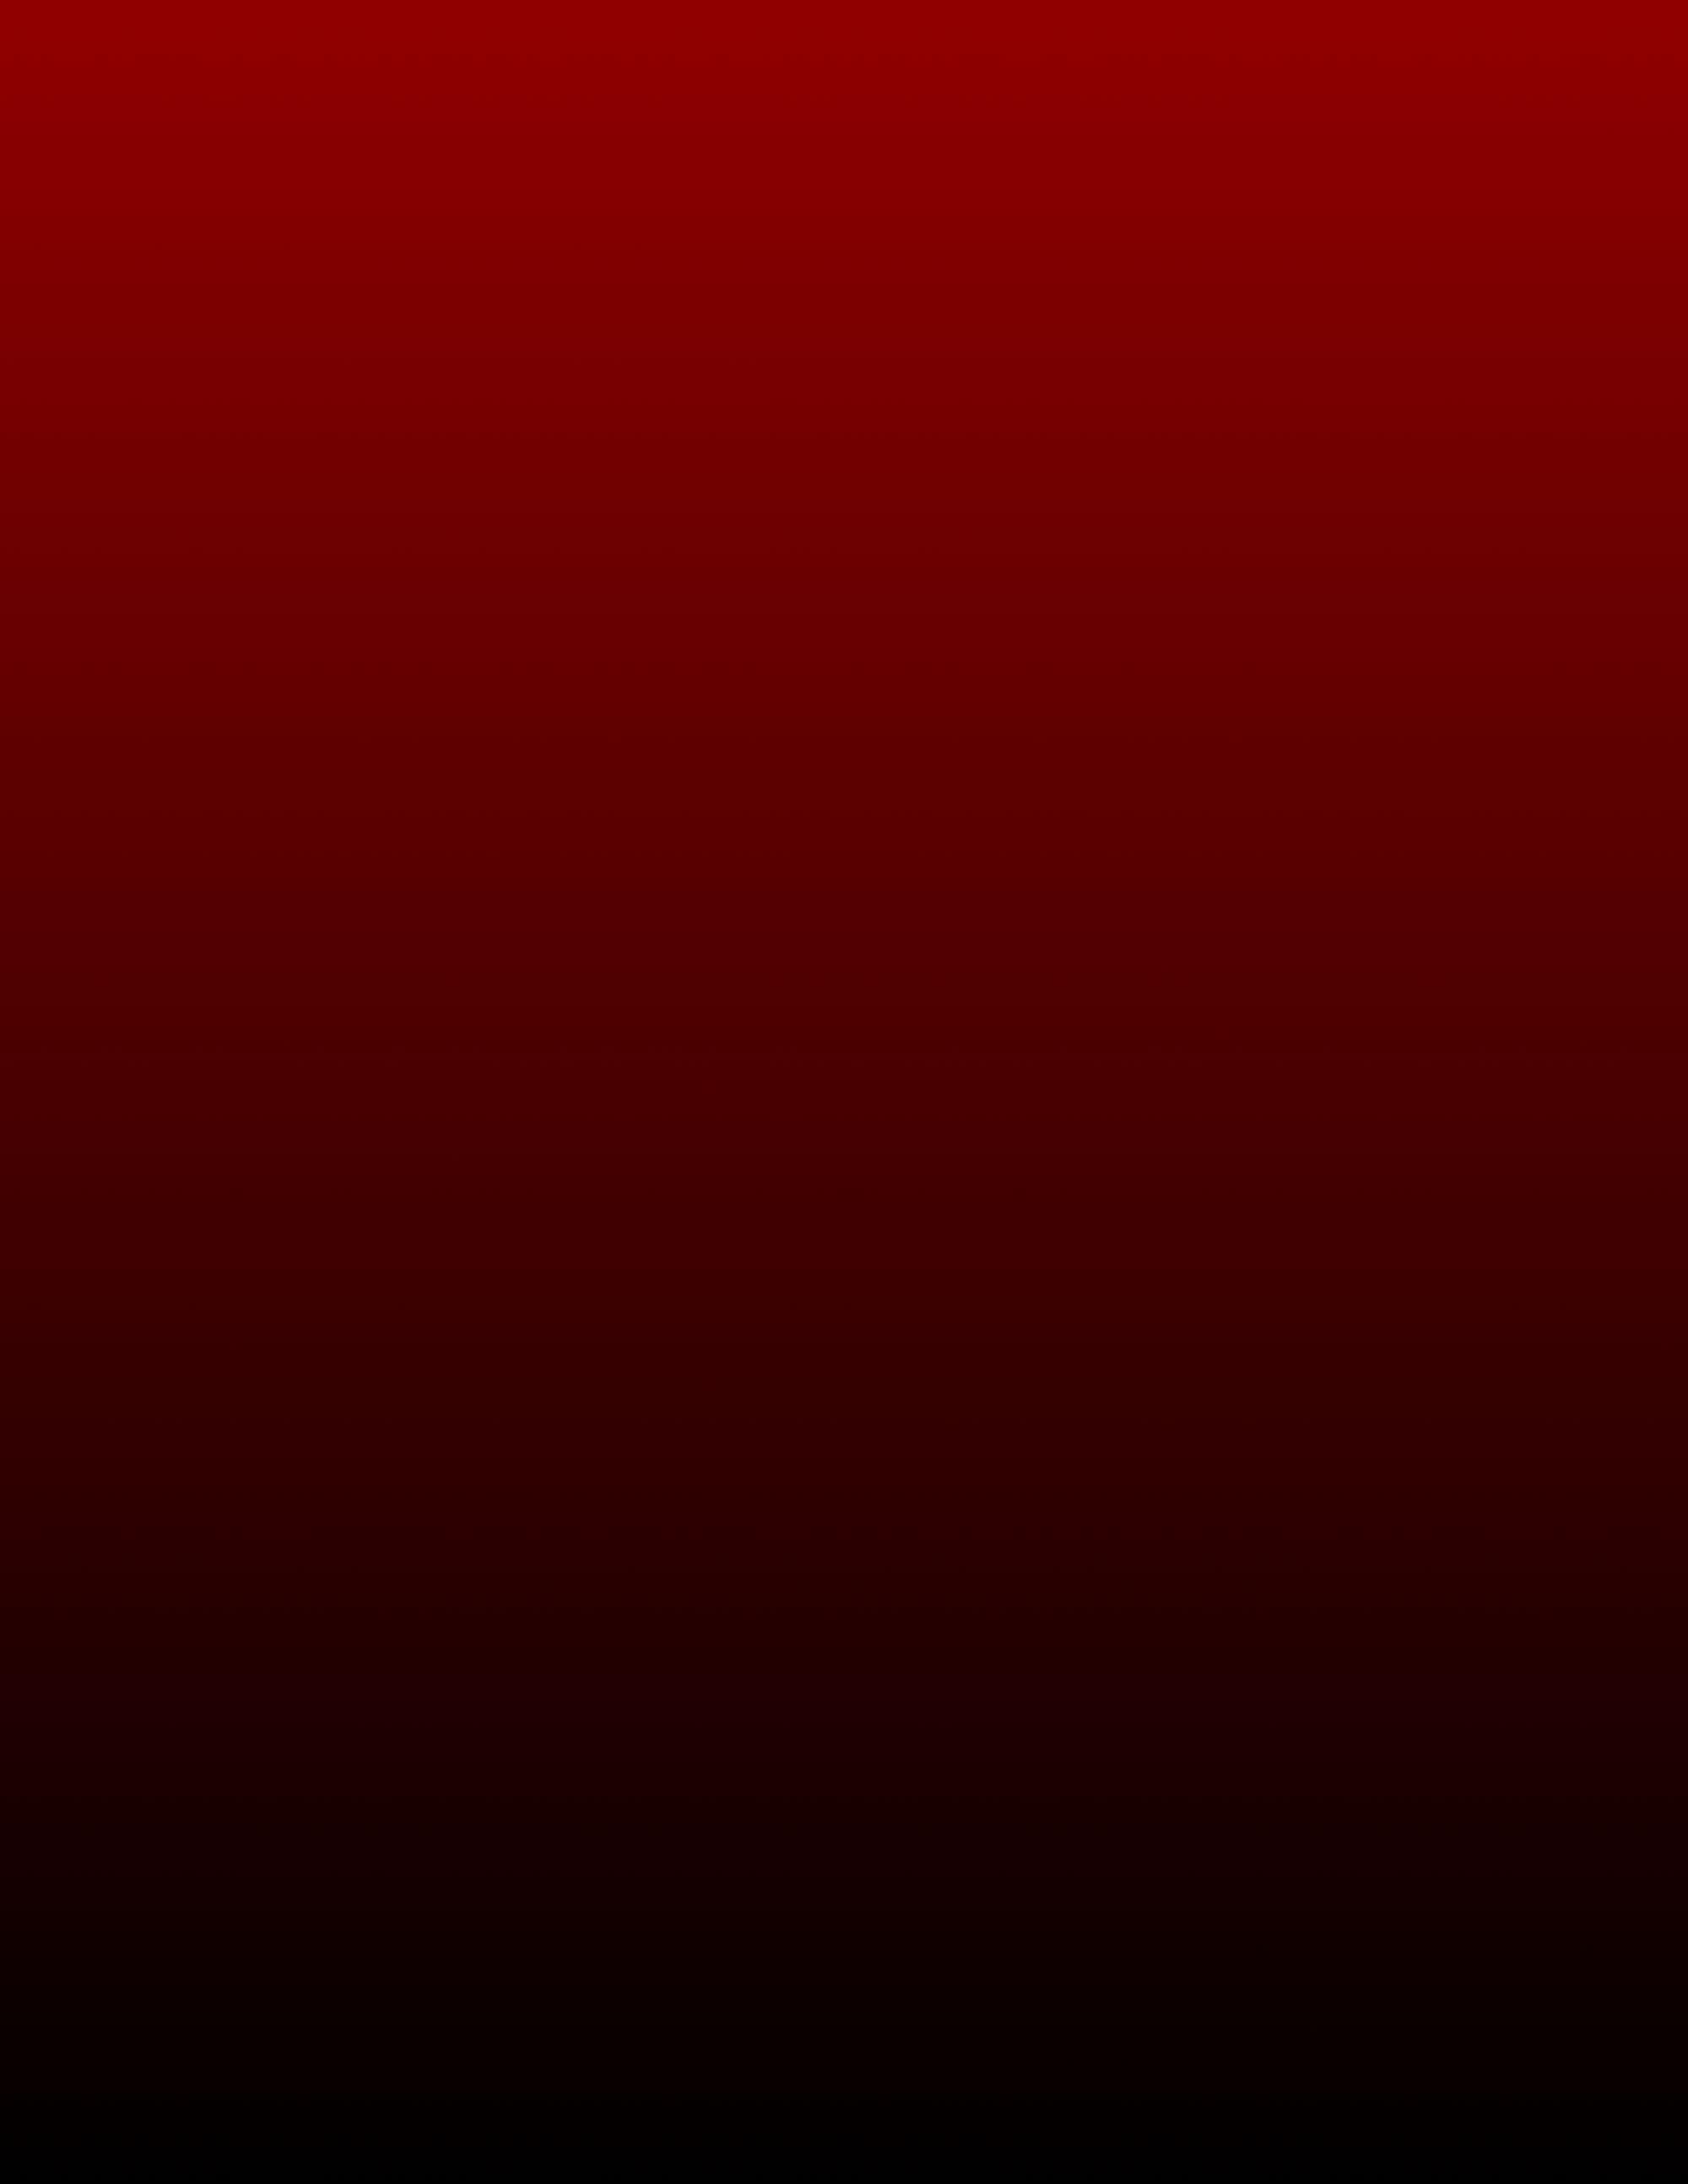 Download Red Background Wallpaper RoyaltyFree Stock Illustration Image   Pixabay